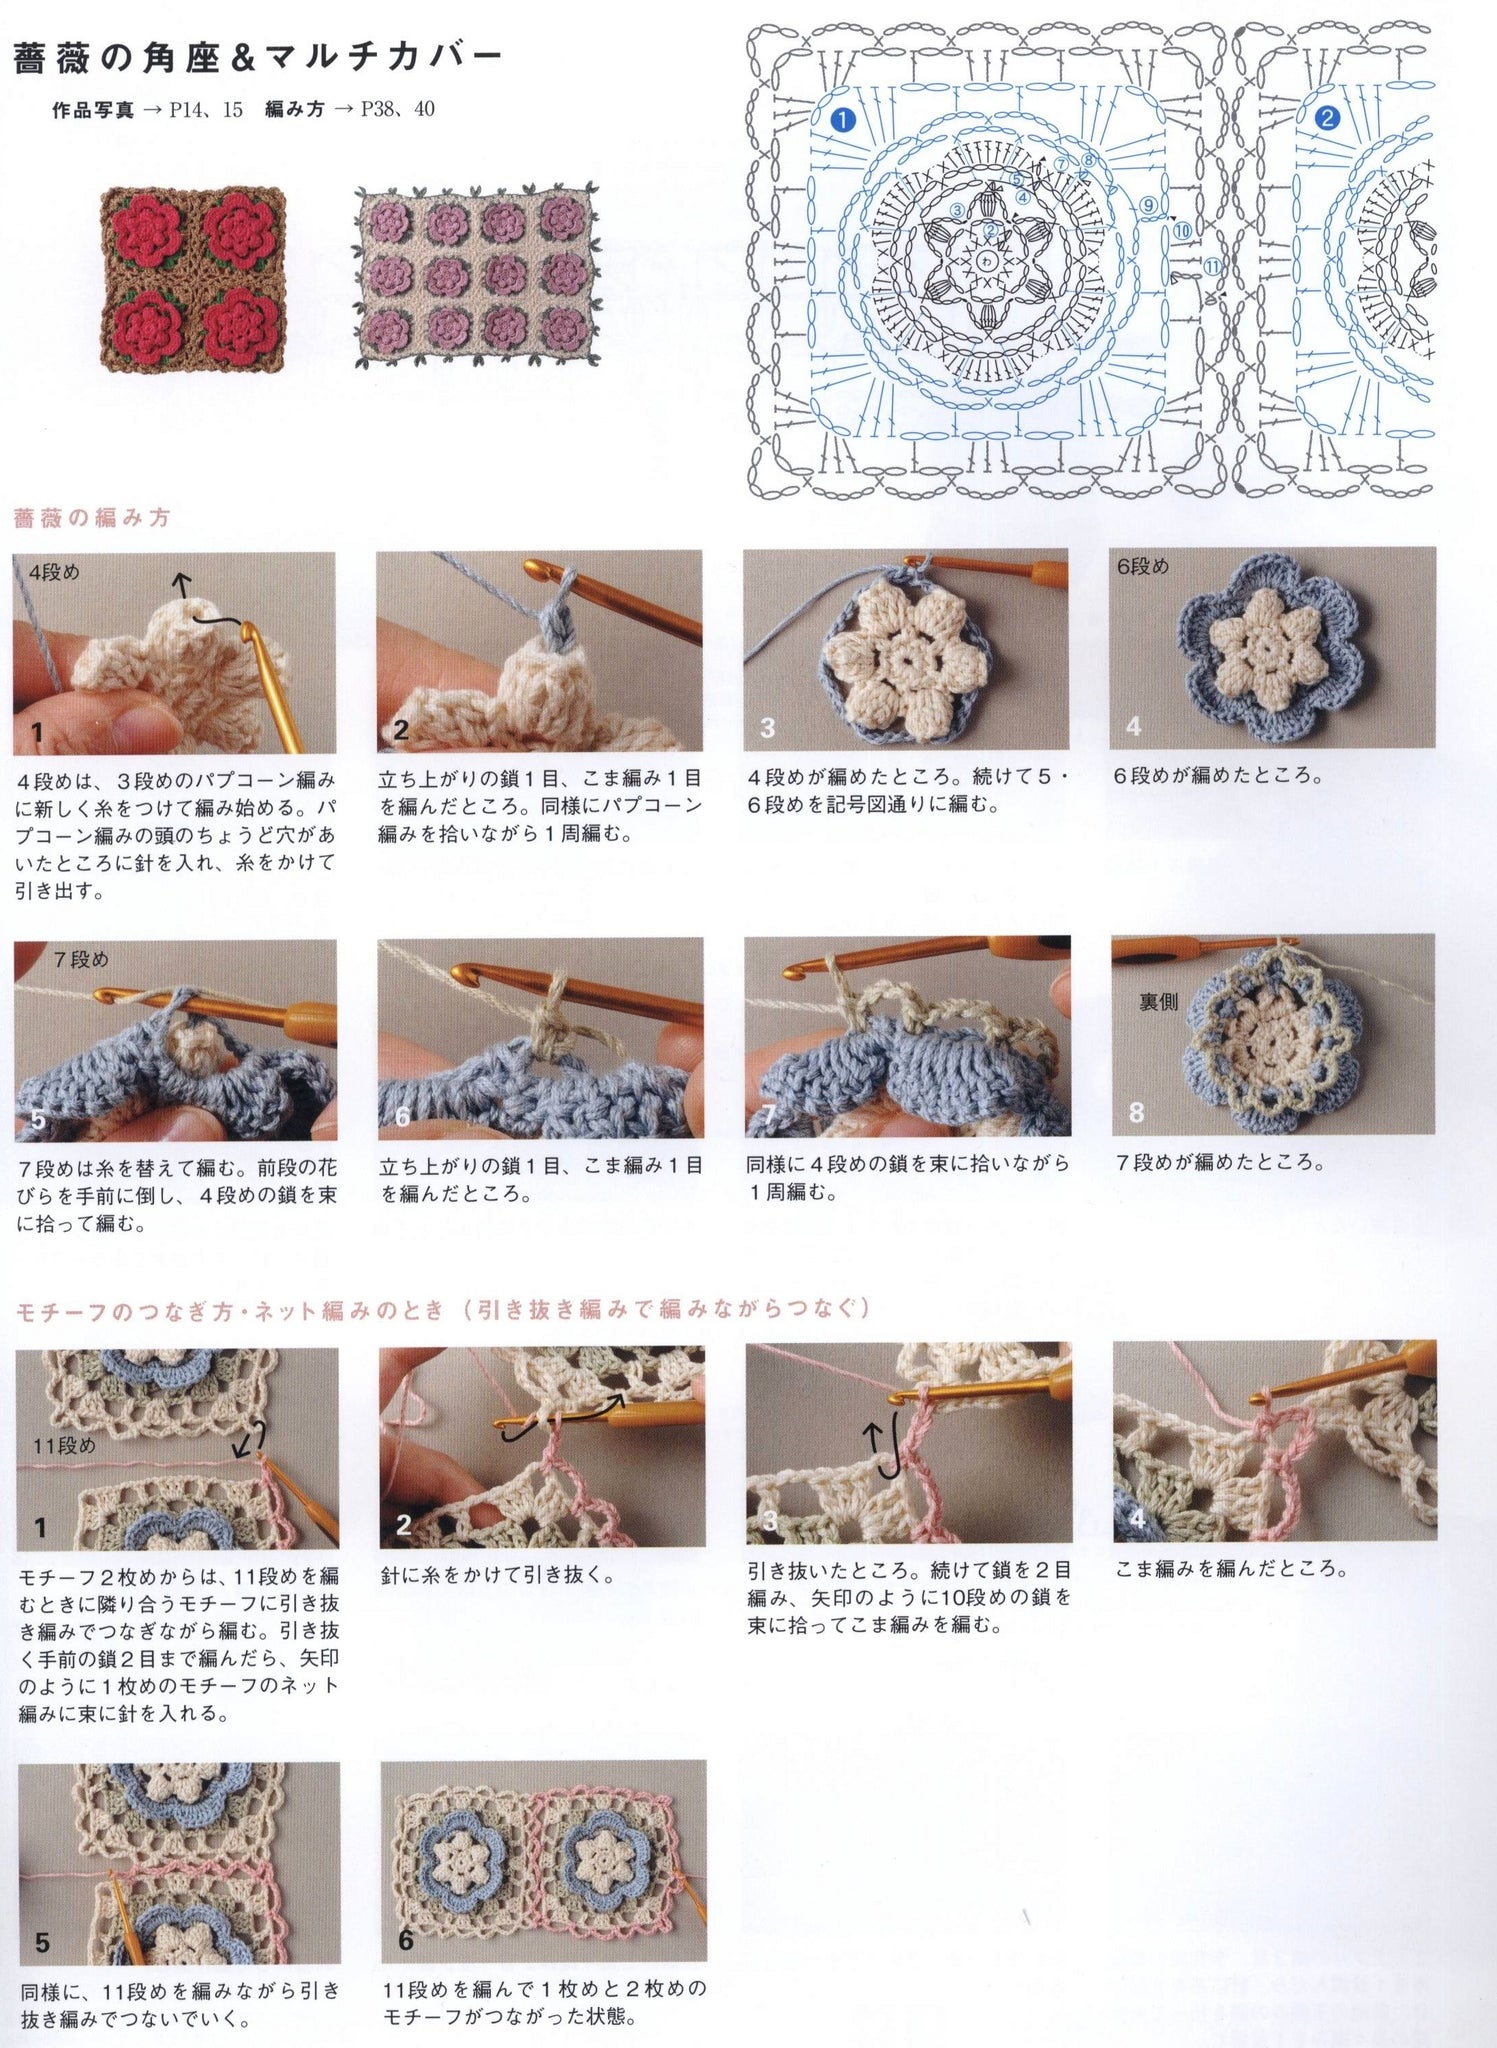 Rose crochet motif chair mat free pattern